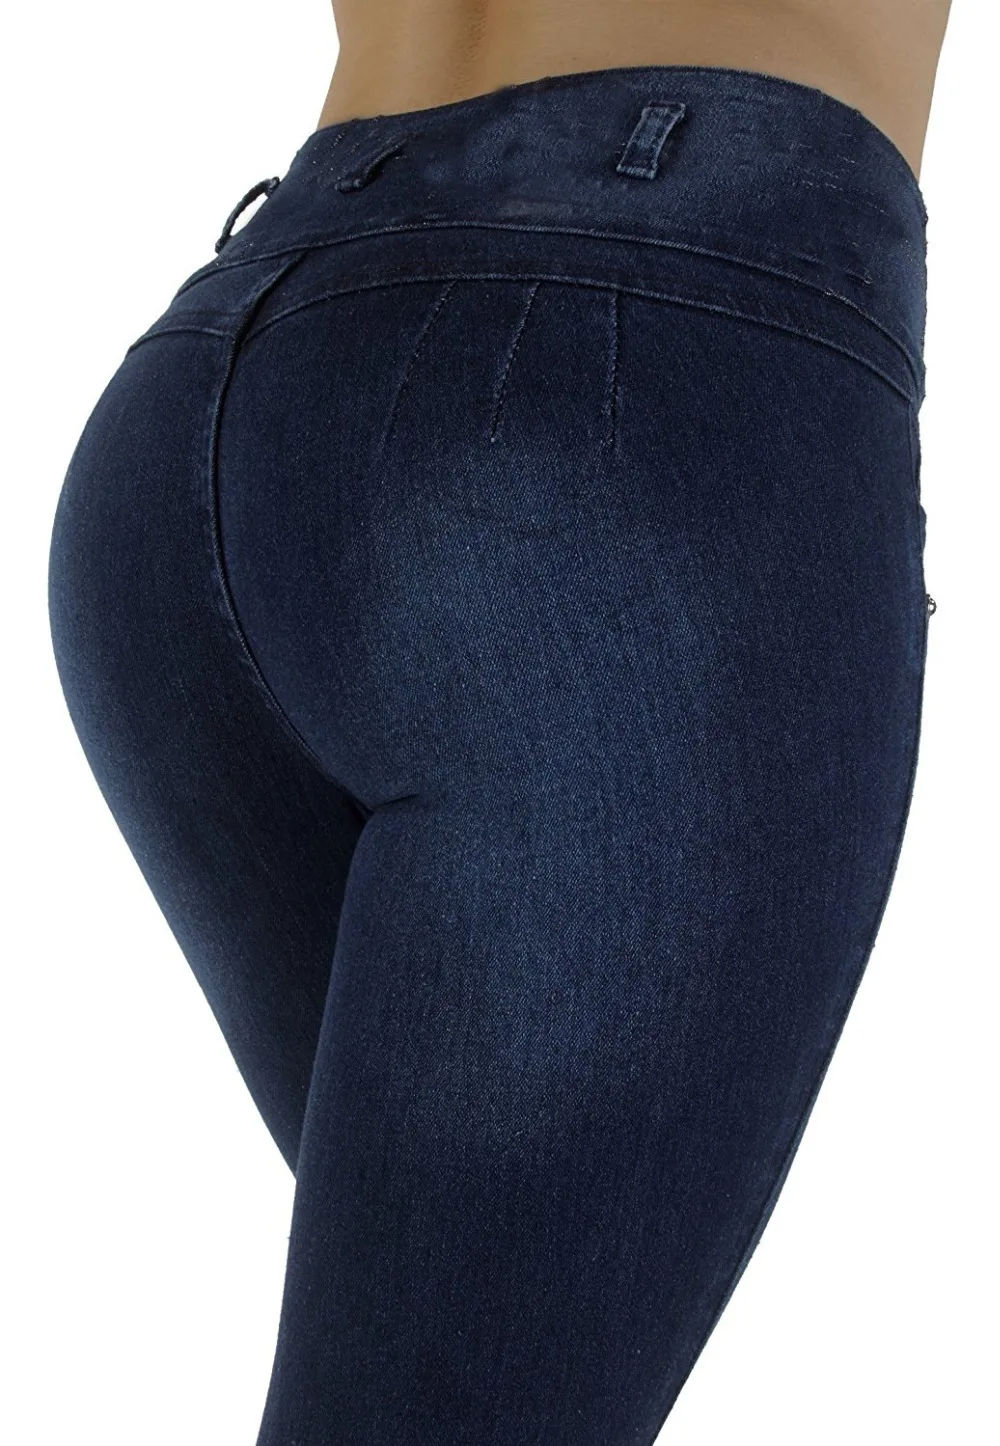 Женские Стрейчевые джинсовые узкие джинсы скинни, брюки-карандаш с завышенной талией, джинсовые брюки